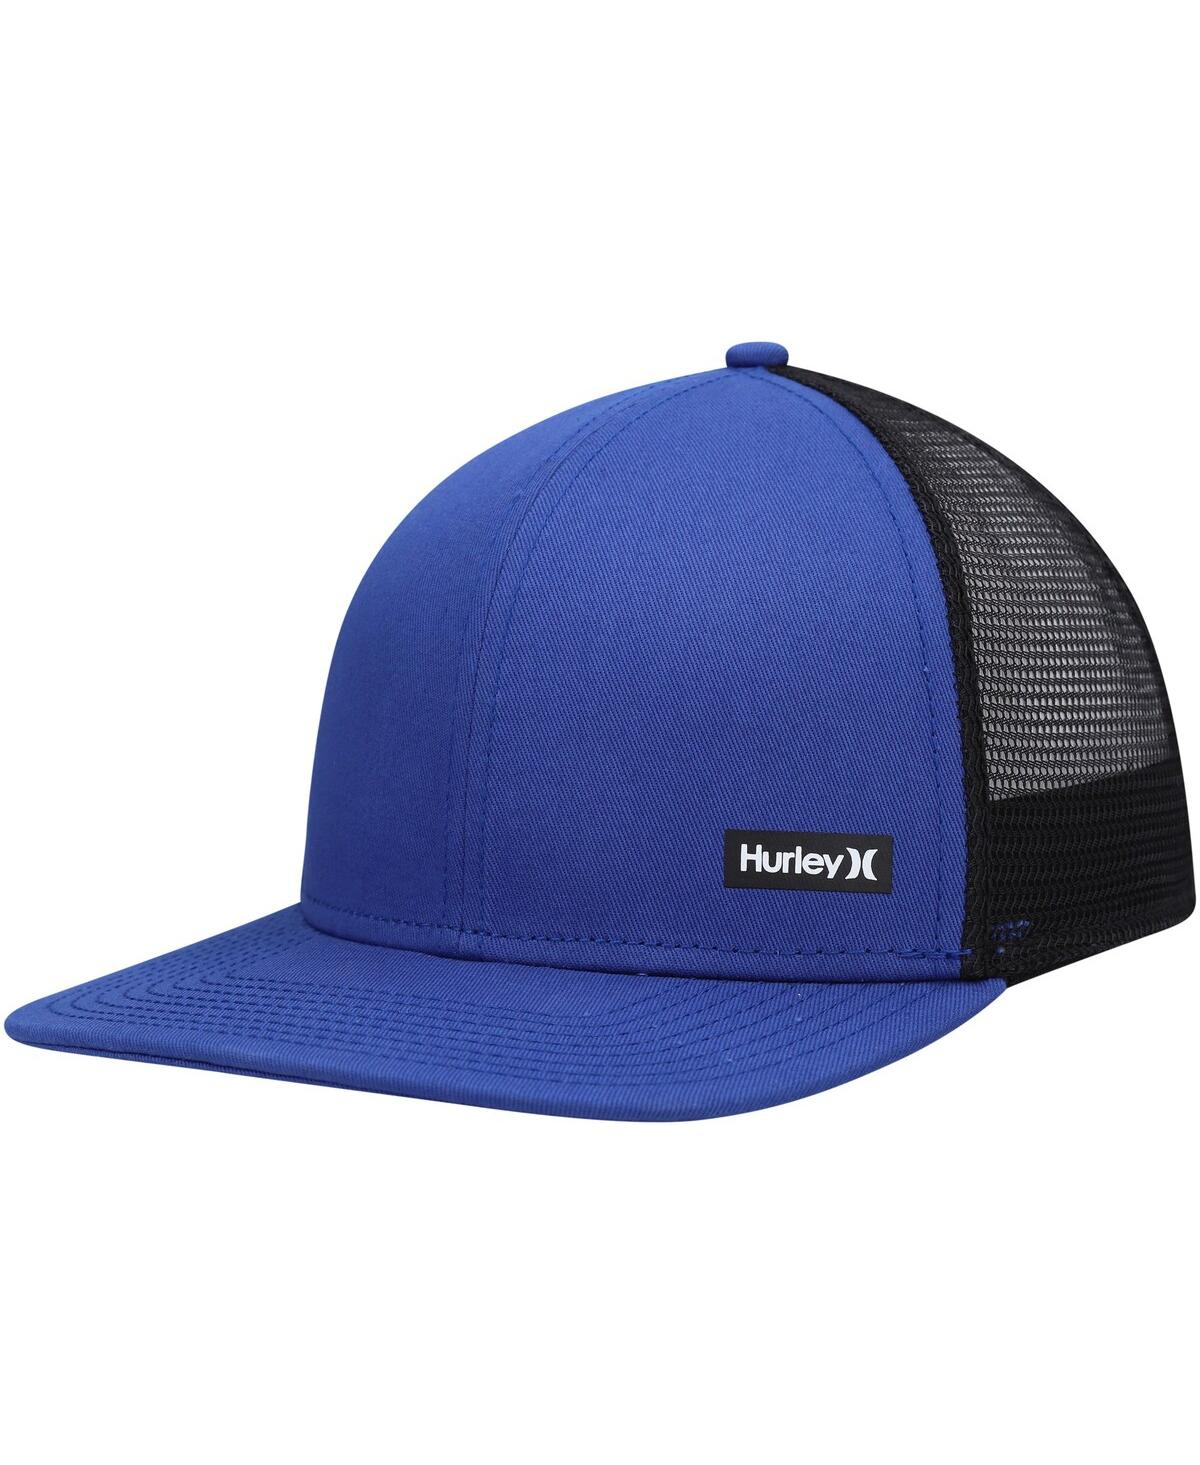 Men's Hurley Blue, Black Supply Trucker Snapback Hat - Blue, Black